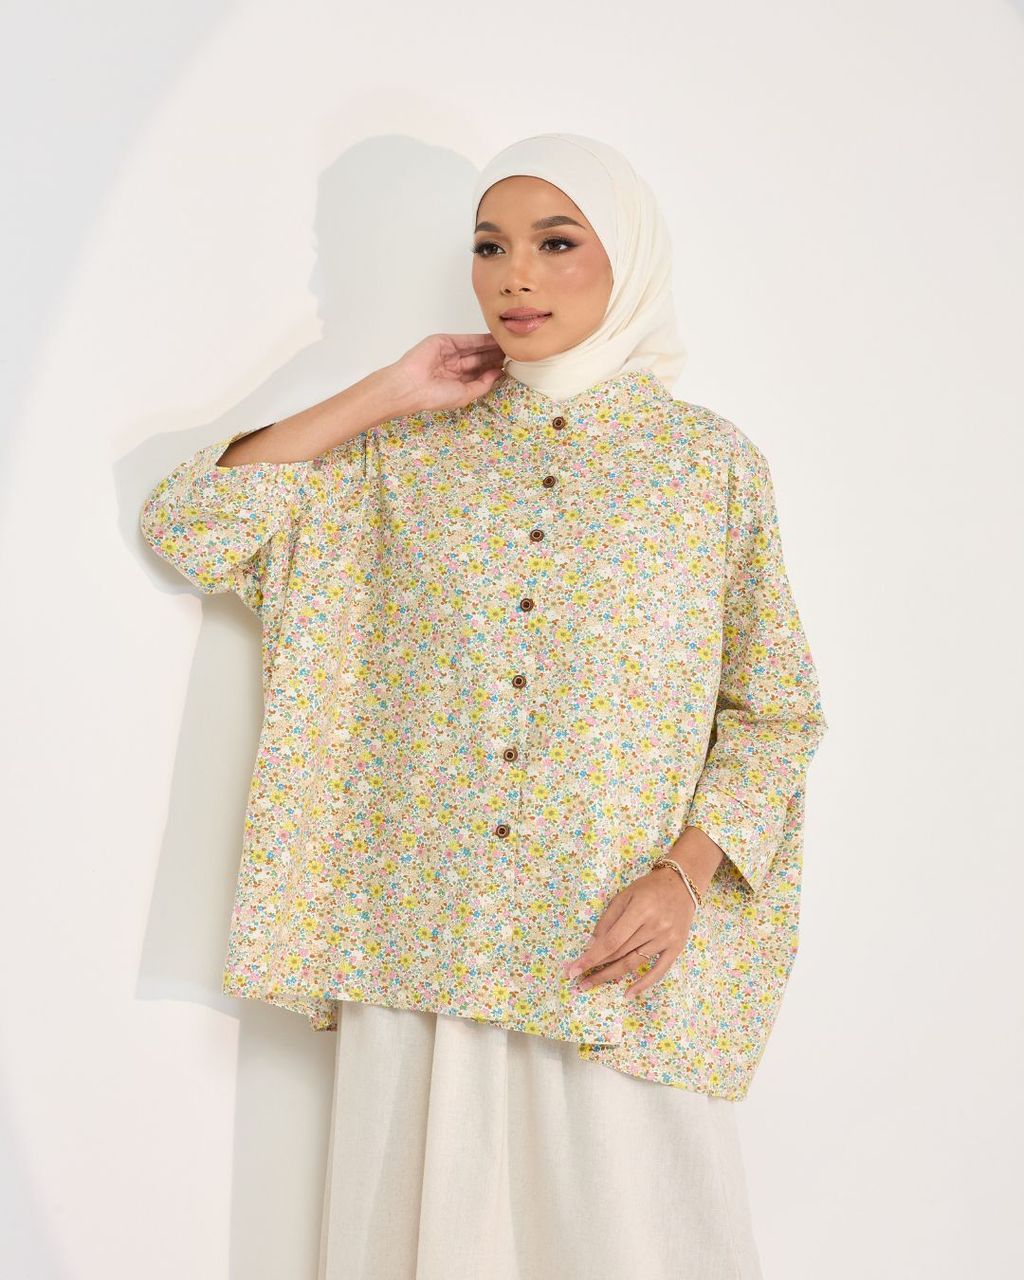 haura-wear-lucy-blouse-lengan panjang-kemeja labuh-baju labuh-tunic-kaftan-midi-dress-blouse-shirt-long-sleeve-baju-muslimah-baju-perempuan-shirt-blouse-baju (9)